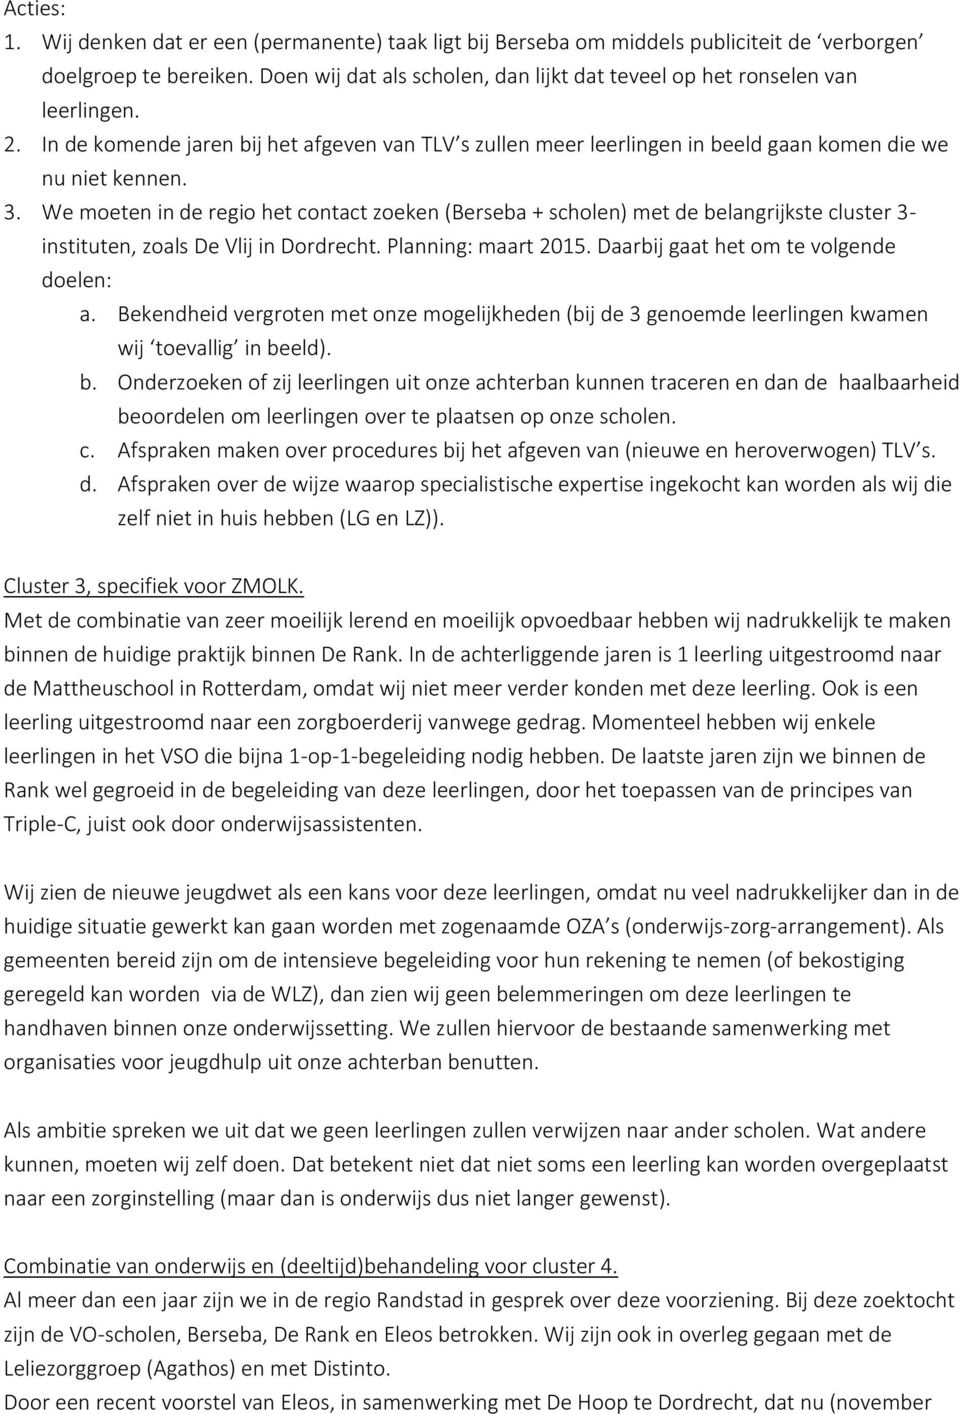 We moeten in de regio het contact zoeken (Berseba + scholen) met de belangrijkste cluster 3- instituten, zoals De Vlij in Dordrecht. Planning: maart 2015. Daarbij gaat het om te volgende doelen: a.